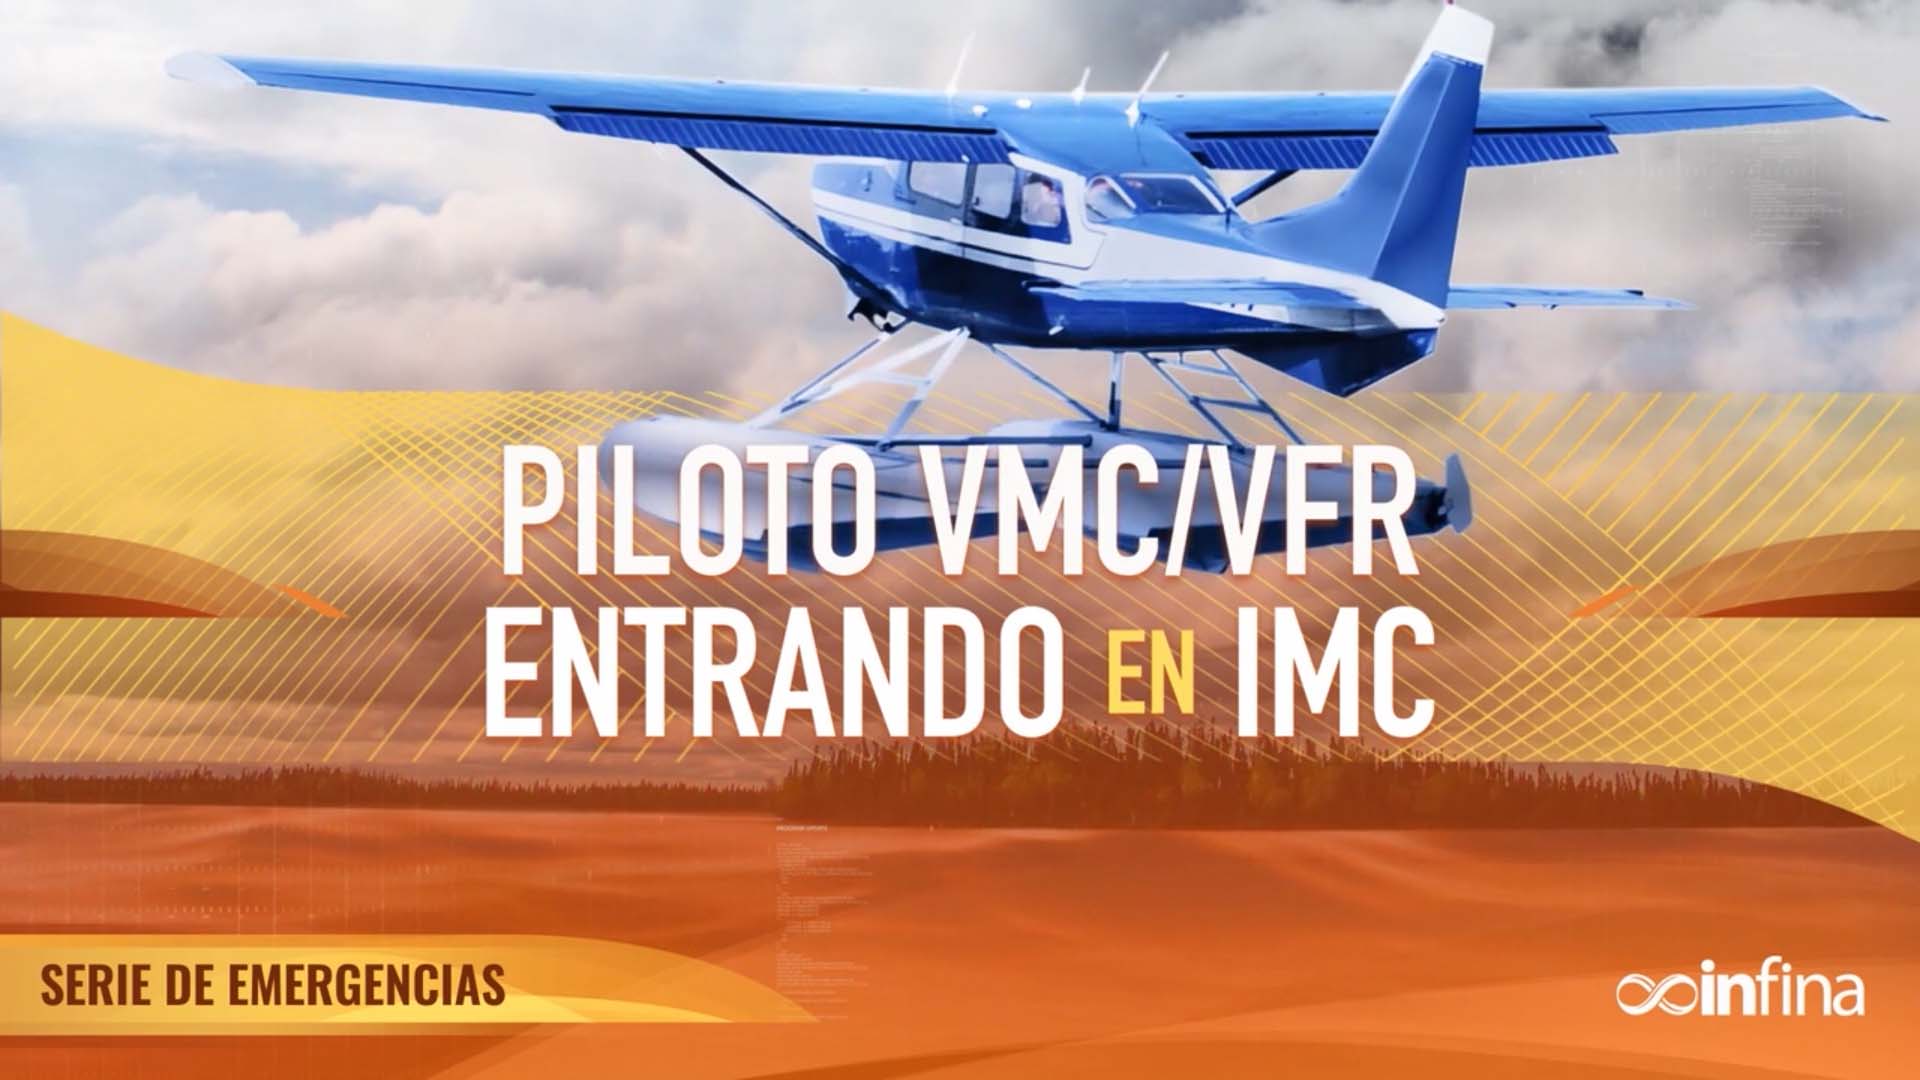 Emergencias: VMC VFR Entrando En IMC